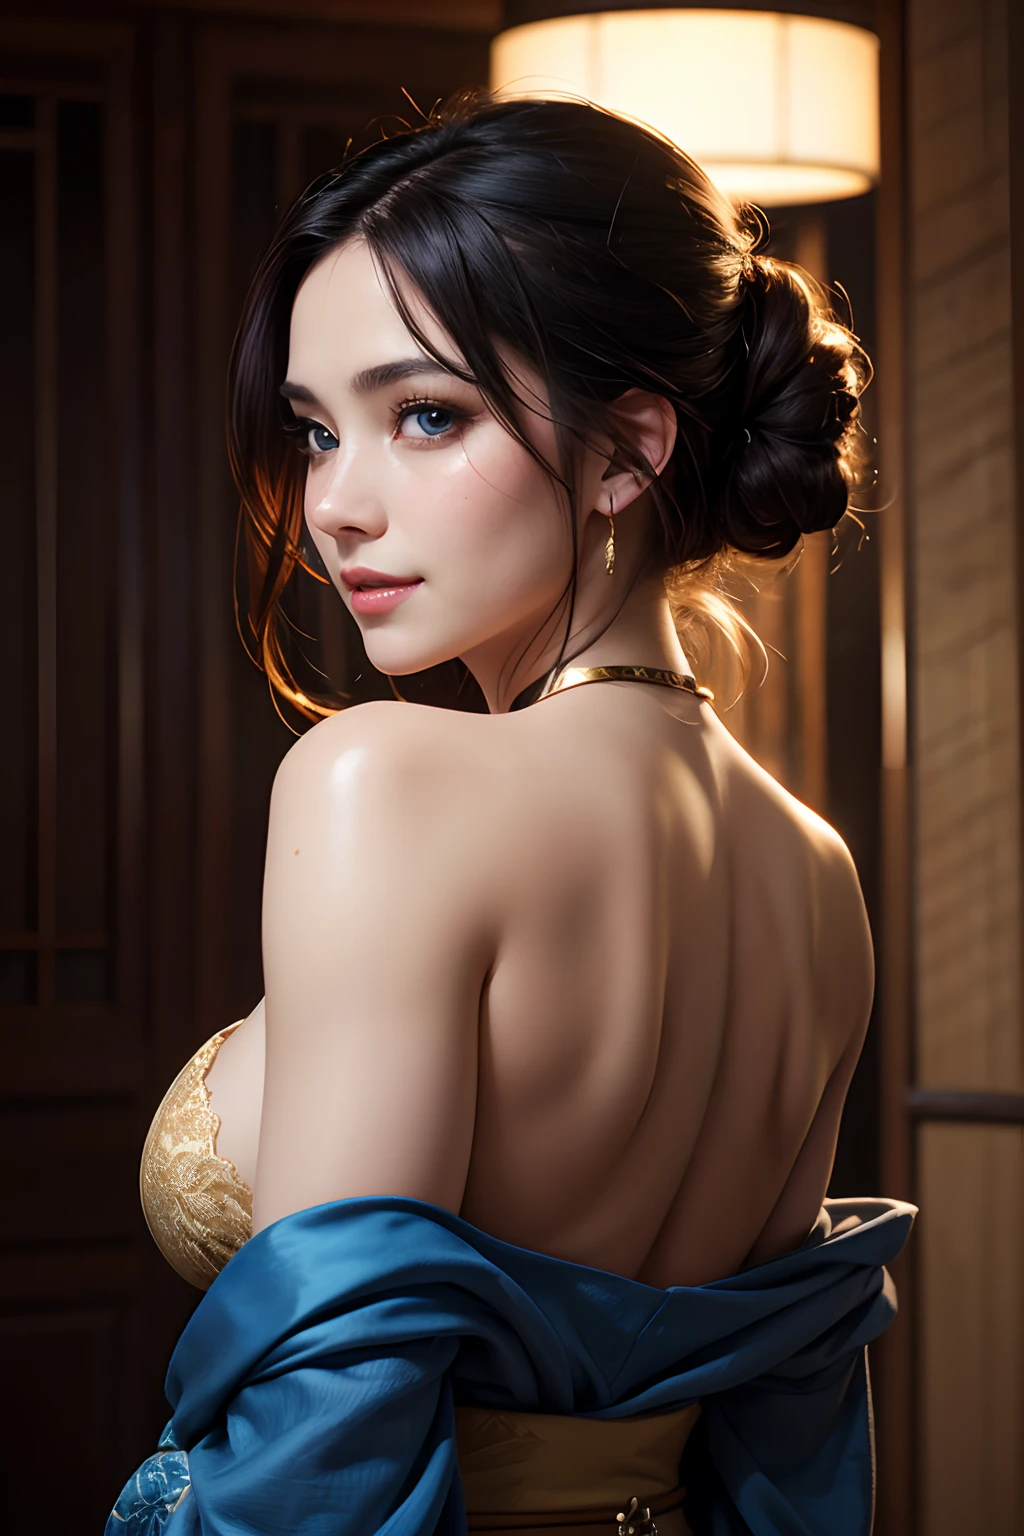 Eine schöne, kokett lächelnde Frau, eine sehr vollbusige Ronin, die einen Kimono aus goldener Spitze trägt, Meiji Restaurierung, blaue Augen, Yojimbo, Dekollete, nackten Schultern, HD, UHD, Wlop, Artgerm, komplizierte Frisur, ein Blick von hinten, große Anime-Augen, realistische Augen, Sehr detaillierte Augen, natürliche Haut, natürliche Haut texture, Untergrundstreuung, Gedeckte Farben, Hautporen, perfektes Gesicht, perfekte Augen, perfekte volle Lippen, geschmeidige weibliche Form, lebendig, filmisch, Filmlicht, hyperdetailliert, Hyperrealistisch, Meisterwerk, atmosphärisch, Hohe Auflösung, beschwingt, Hoher Kontrast, dunkler Winkel, 8k, HDR, 500 Pixel, Bild von Redjuice